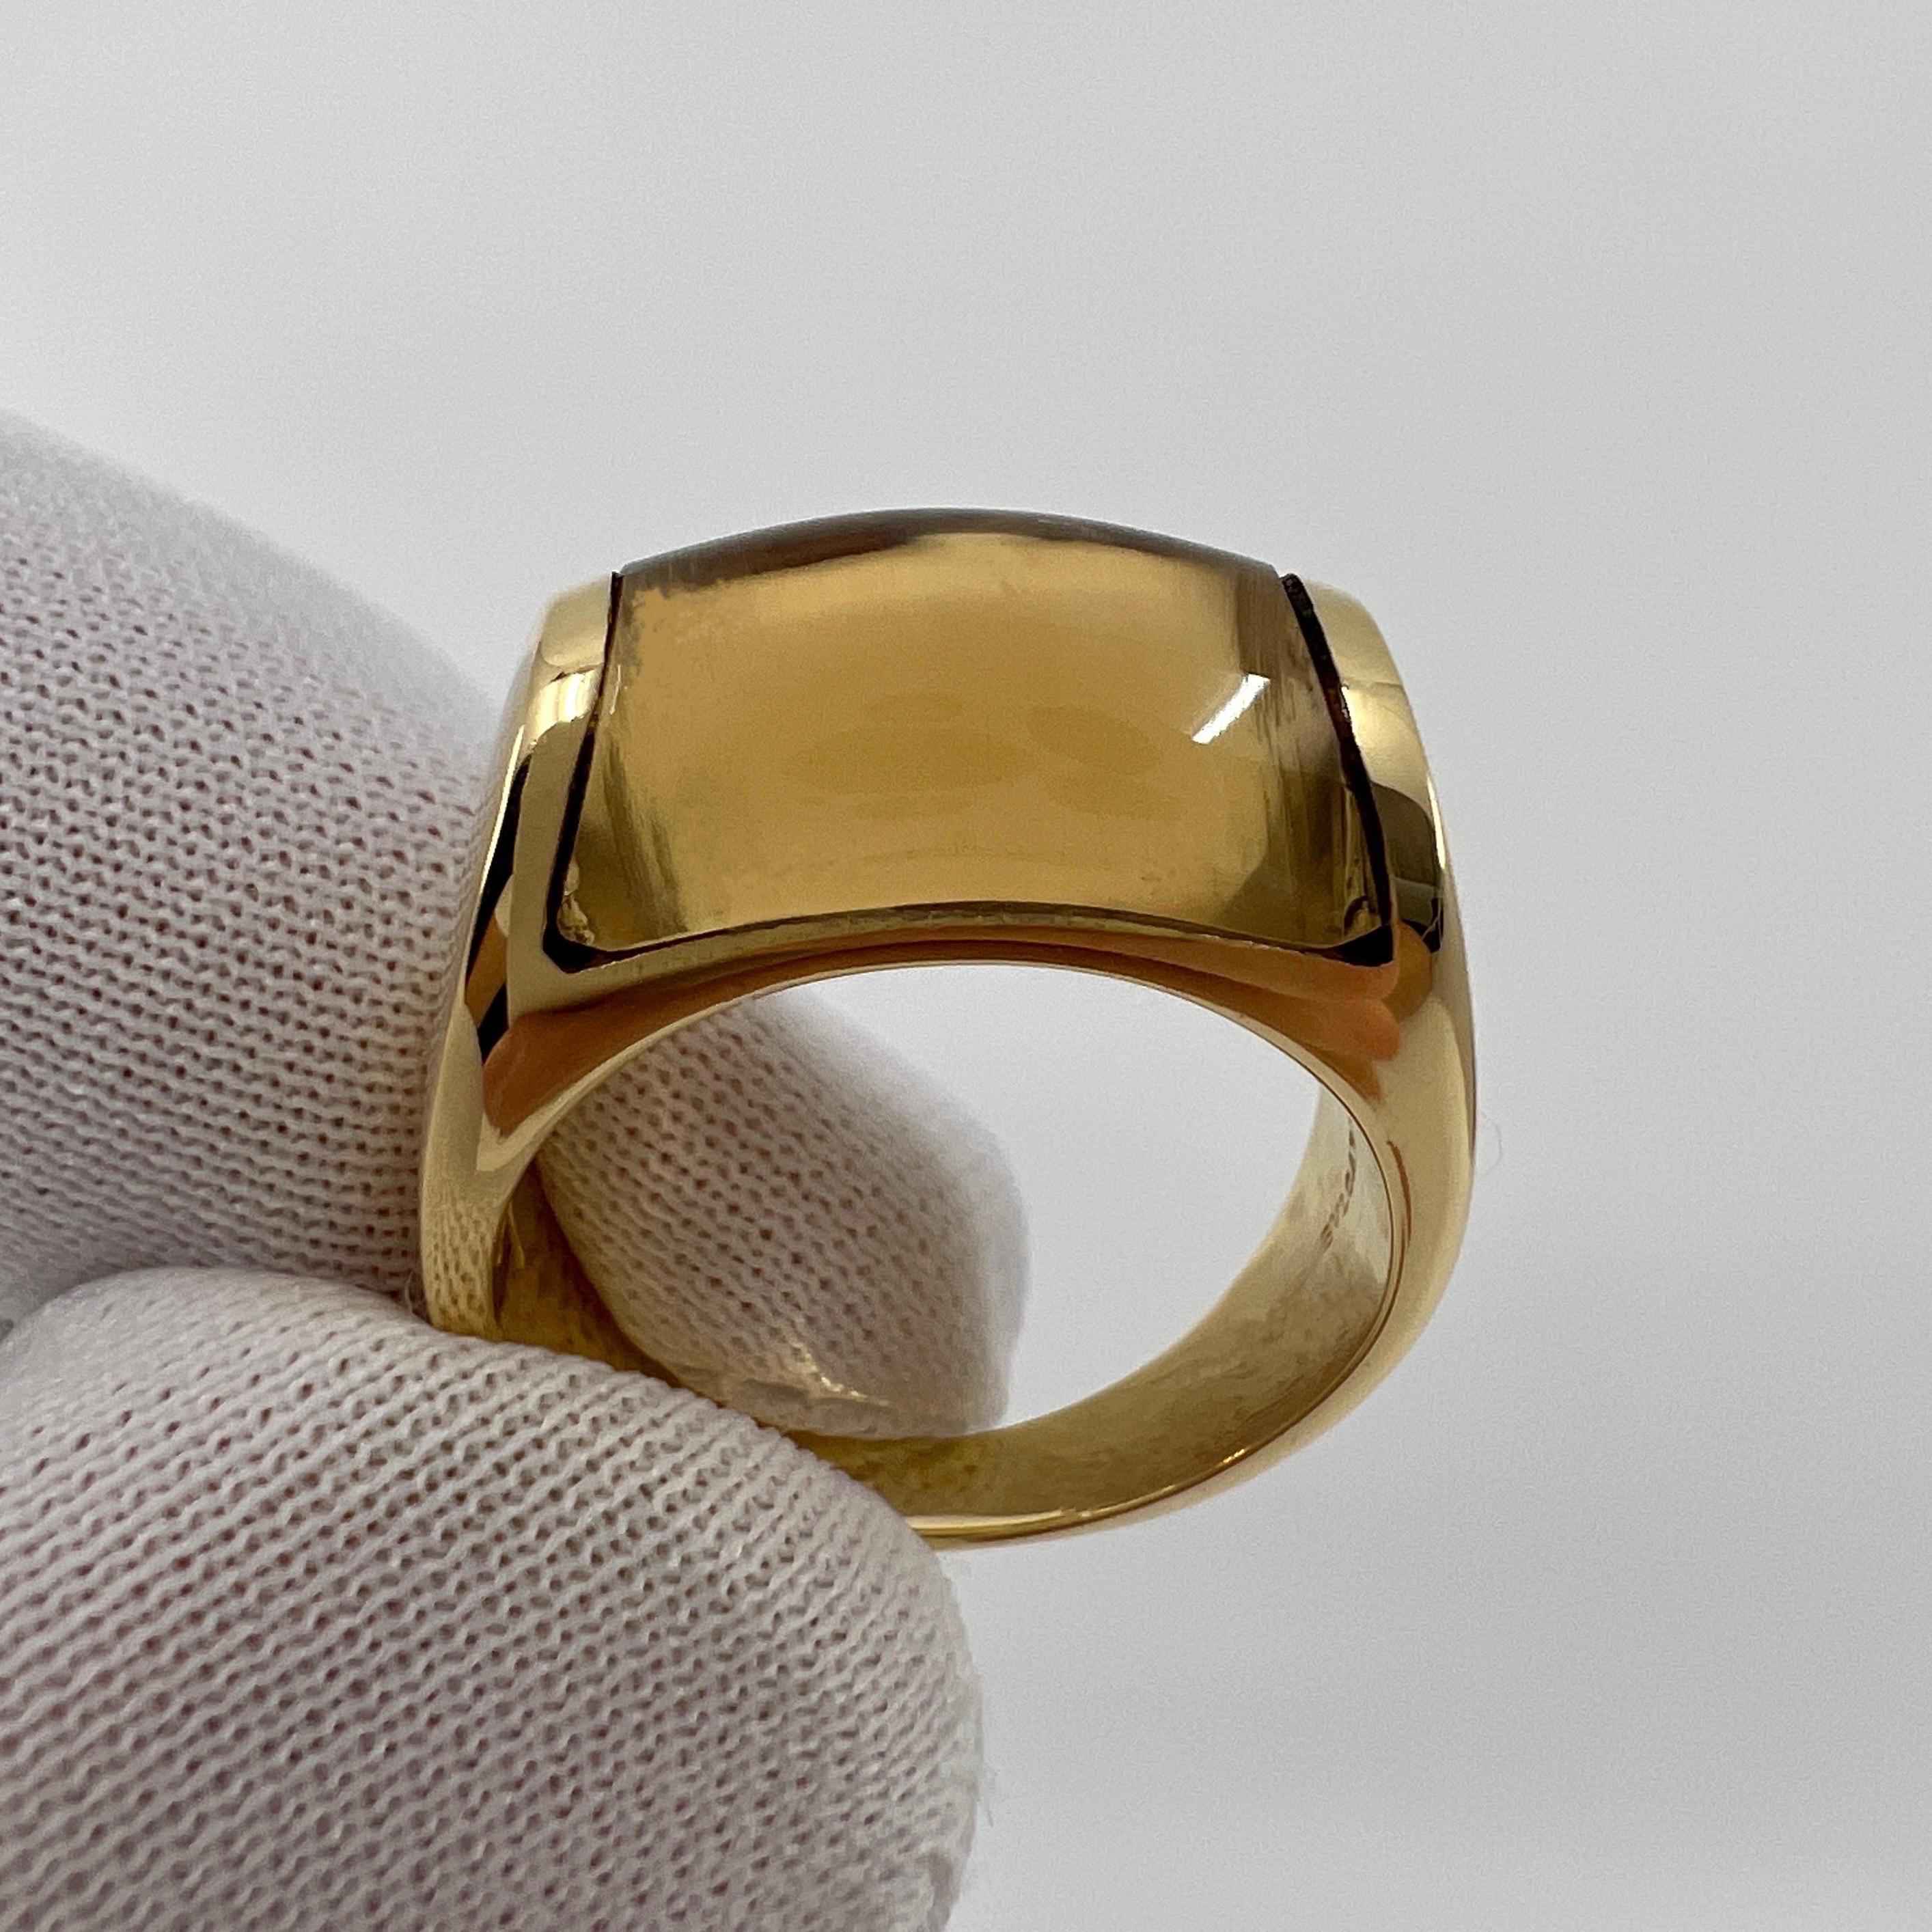 Rare Bvlgari Bulgari Tronchetto 18k Yellow Gold Yellow Citrine Ring with Box For Sale 2